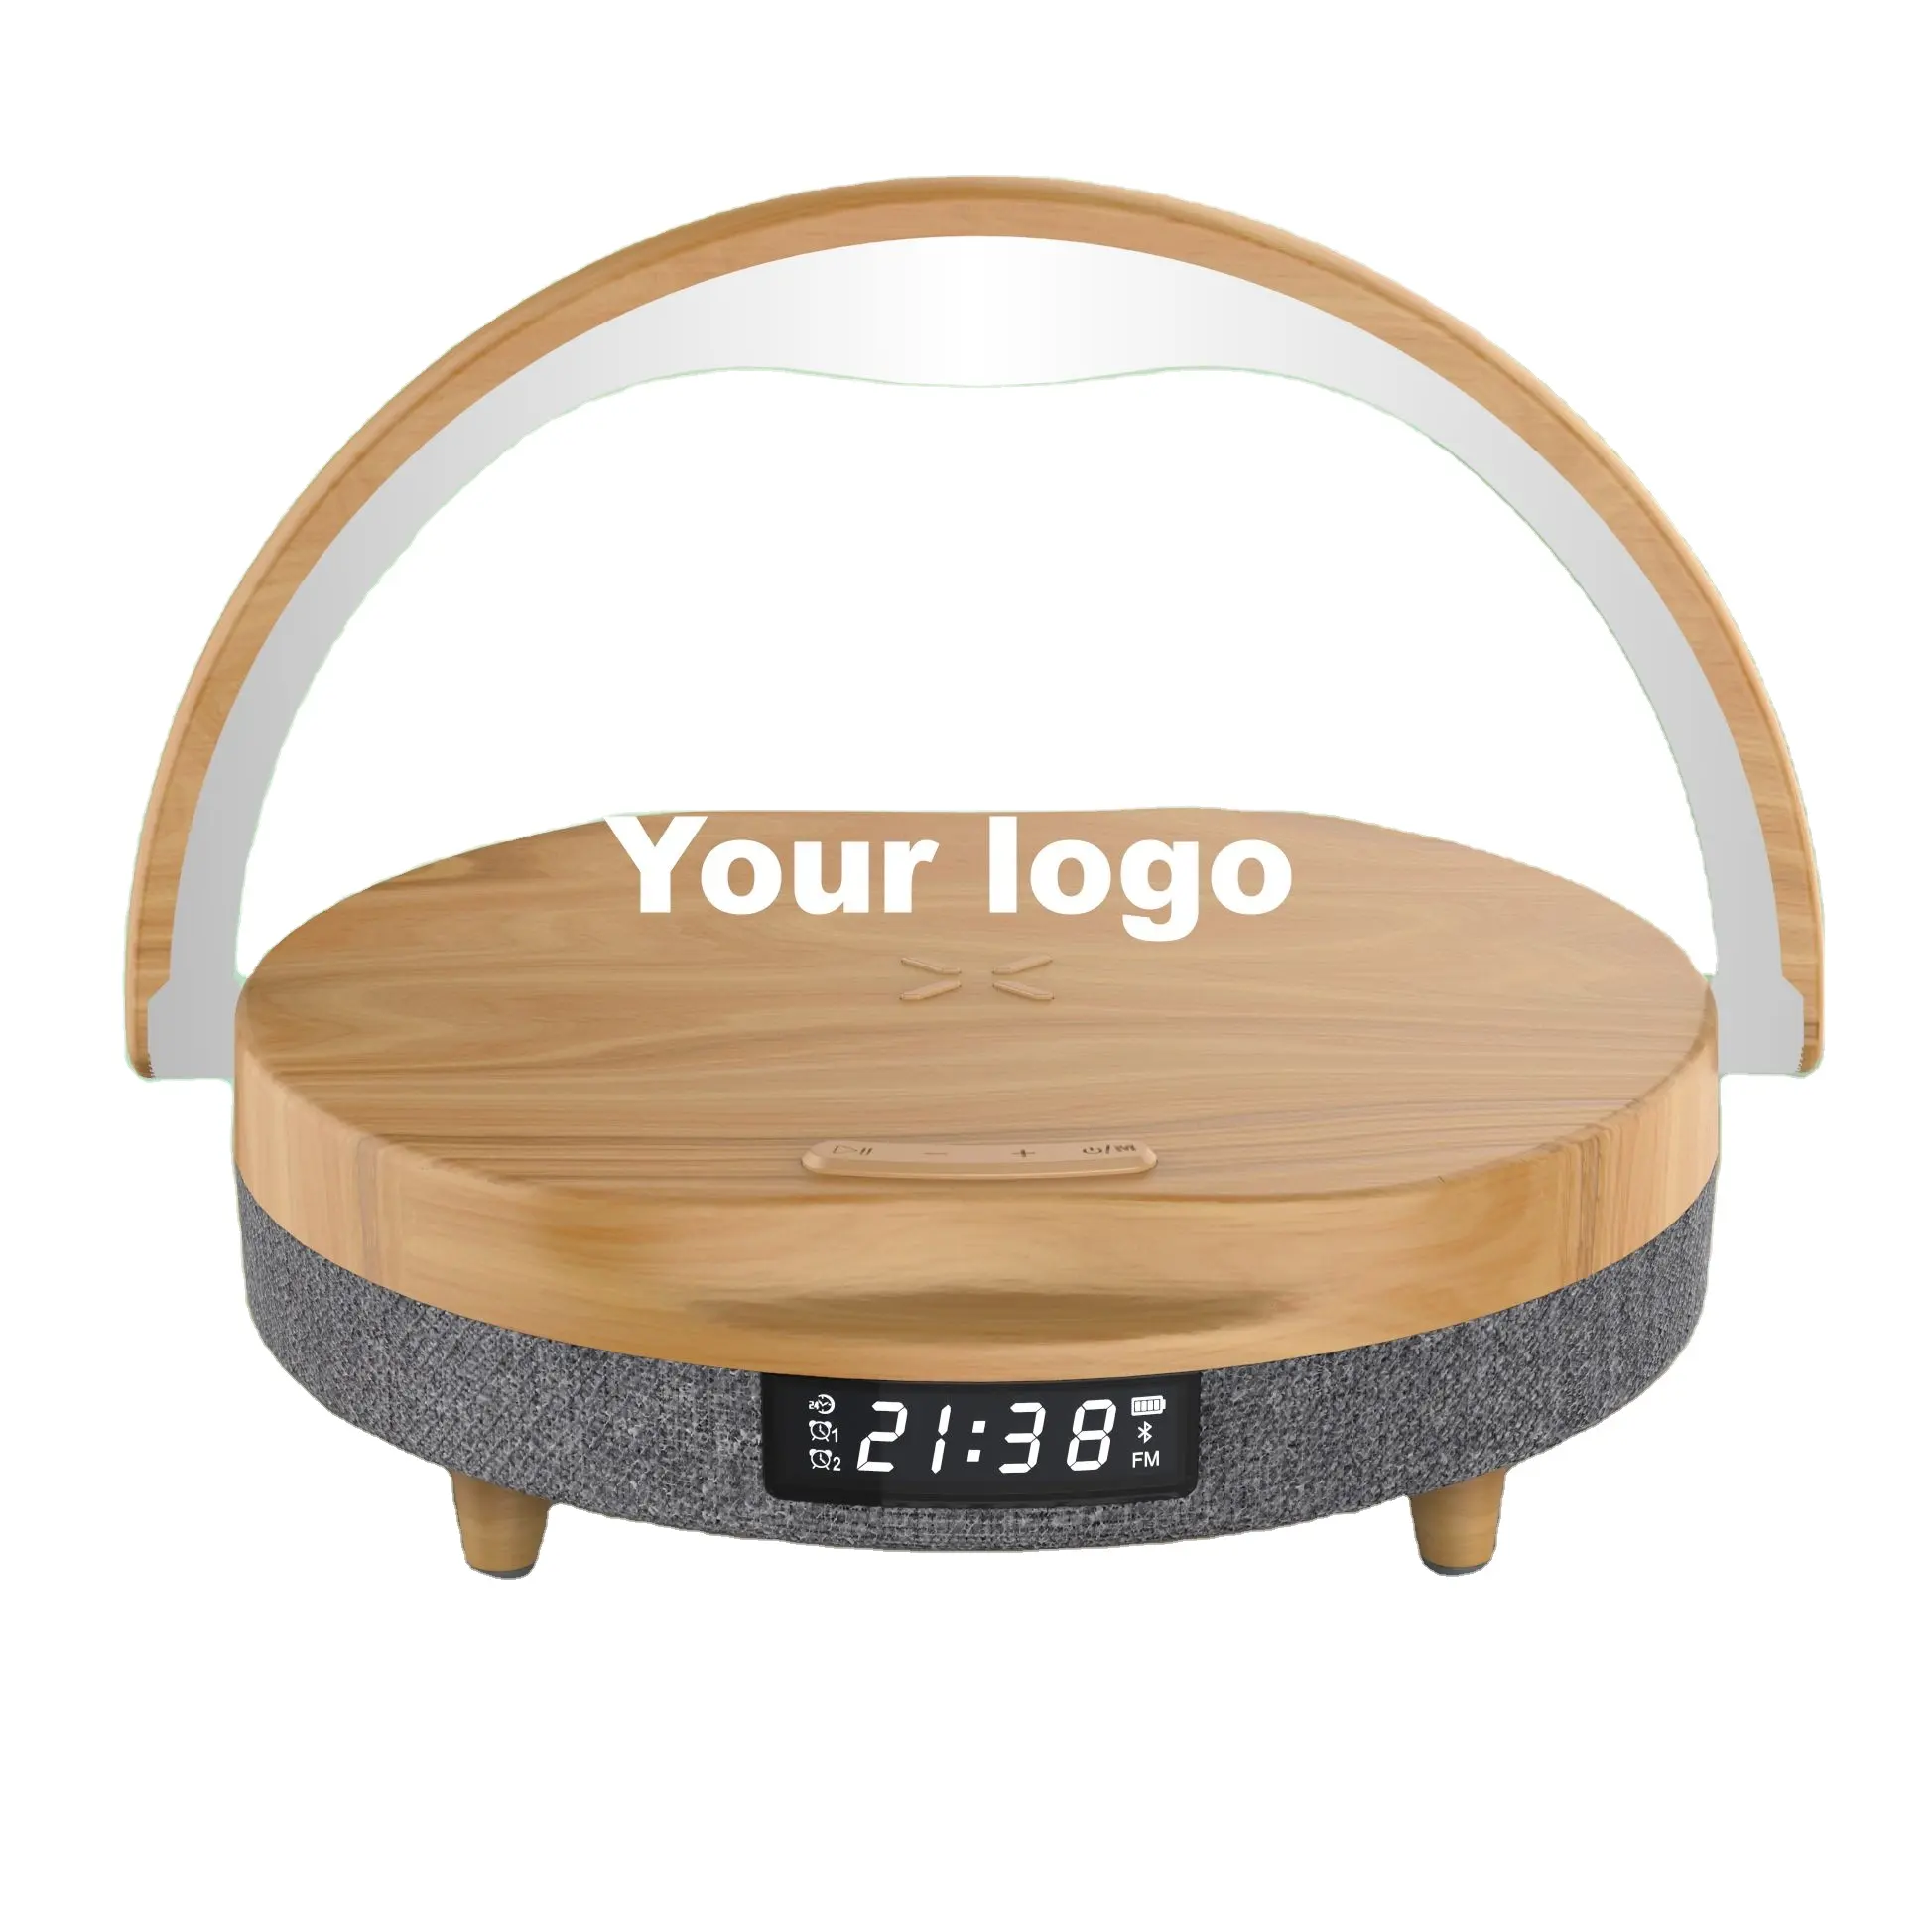 Oem לוגו pemium קידום מתנה הזמנה מנורה חכמה עם הצ 'י מהיר צ' י רמקול bluetooth תצוגה הוביל שעון דיגיטלי